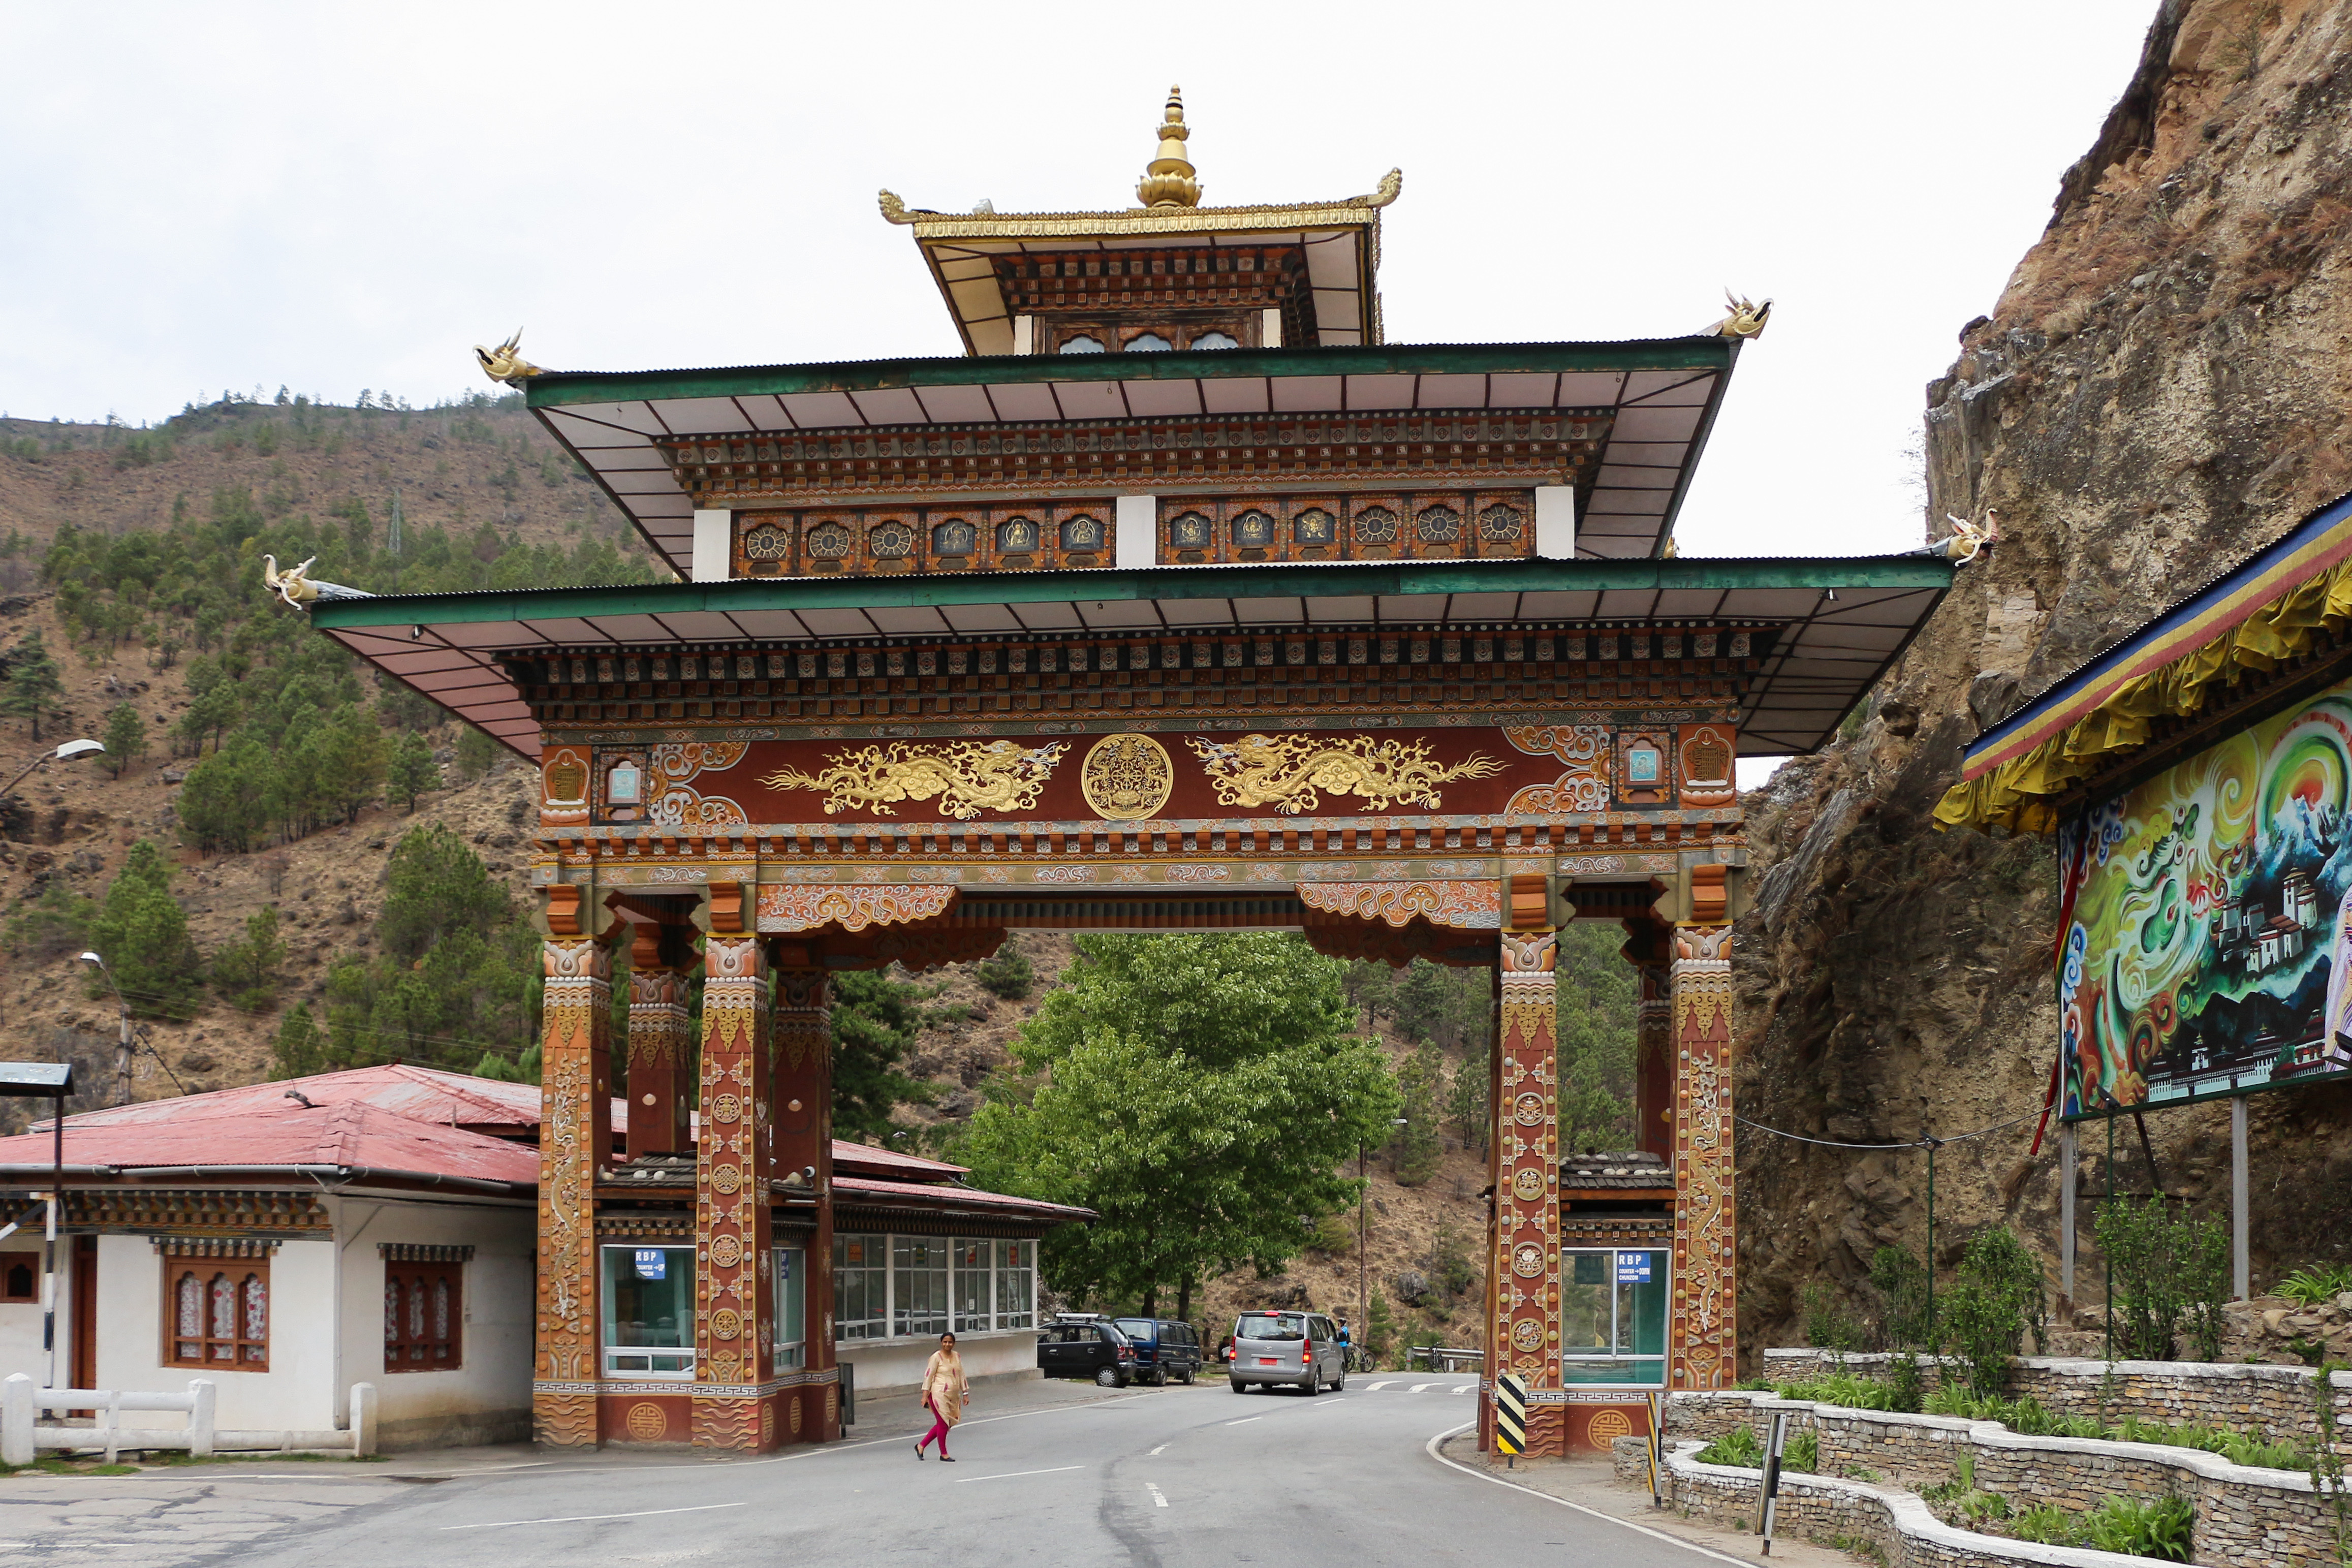 ভুটান গেইট। collected from:https://upload.wikimedia.org/wikipedia/commons/e/e4/Gate_at_Chuzom,_Bhutan_01.jpg